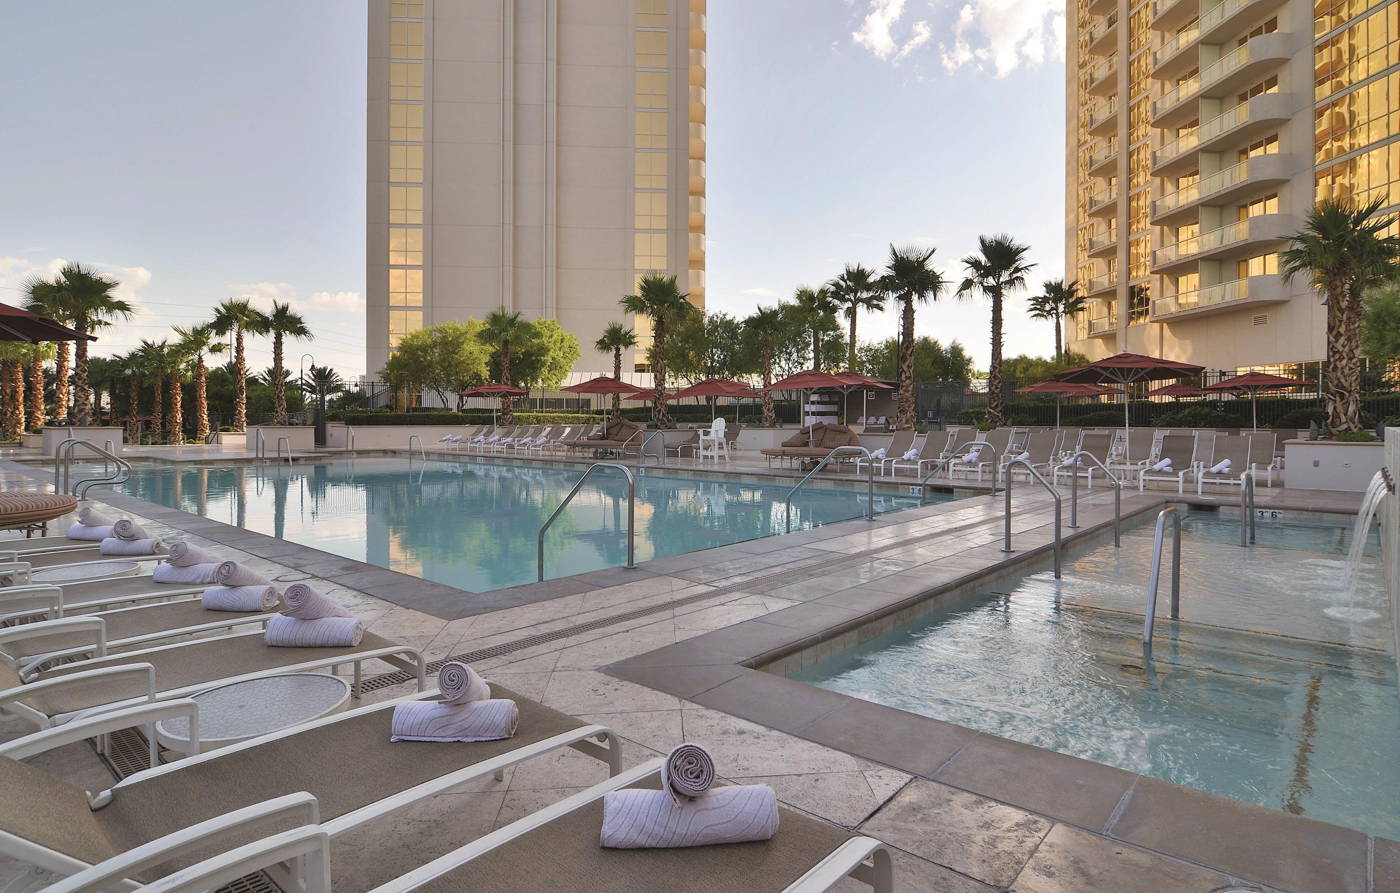 Private Pools at The Signature Las Vegas